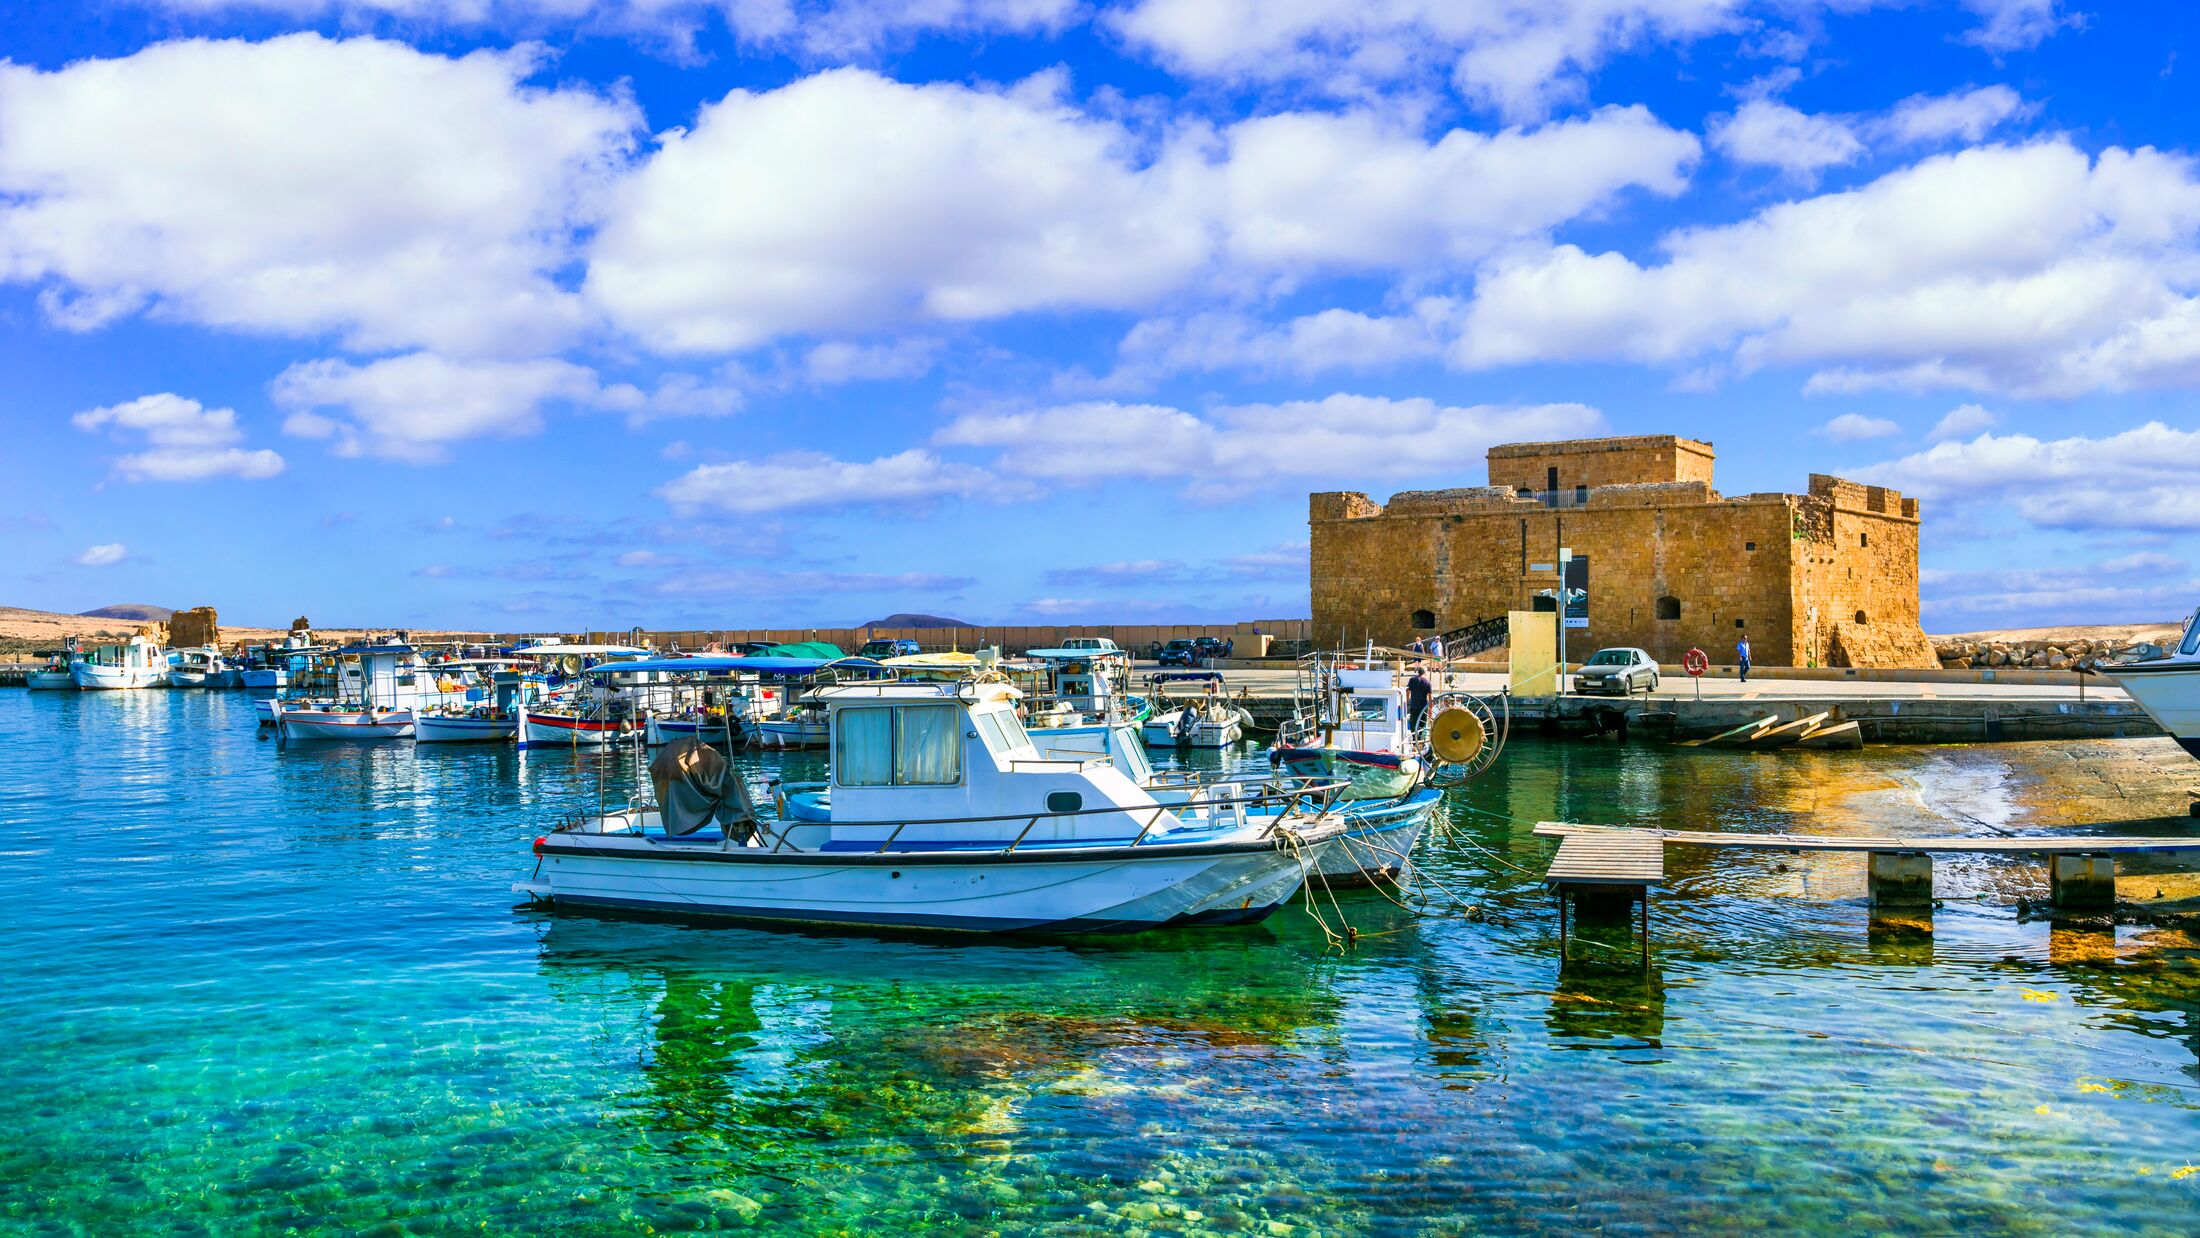 Vacanta in Paphos, Cipru – DOAR 186 euro (include zbor si cazare 5 nopti)